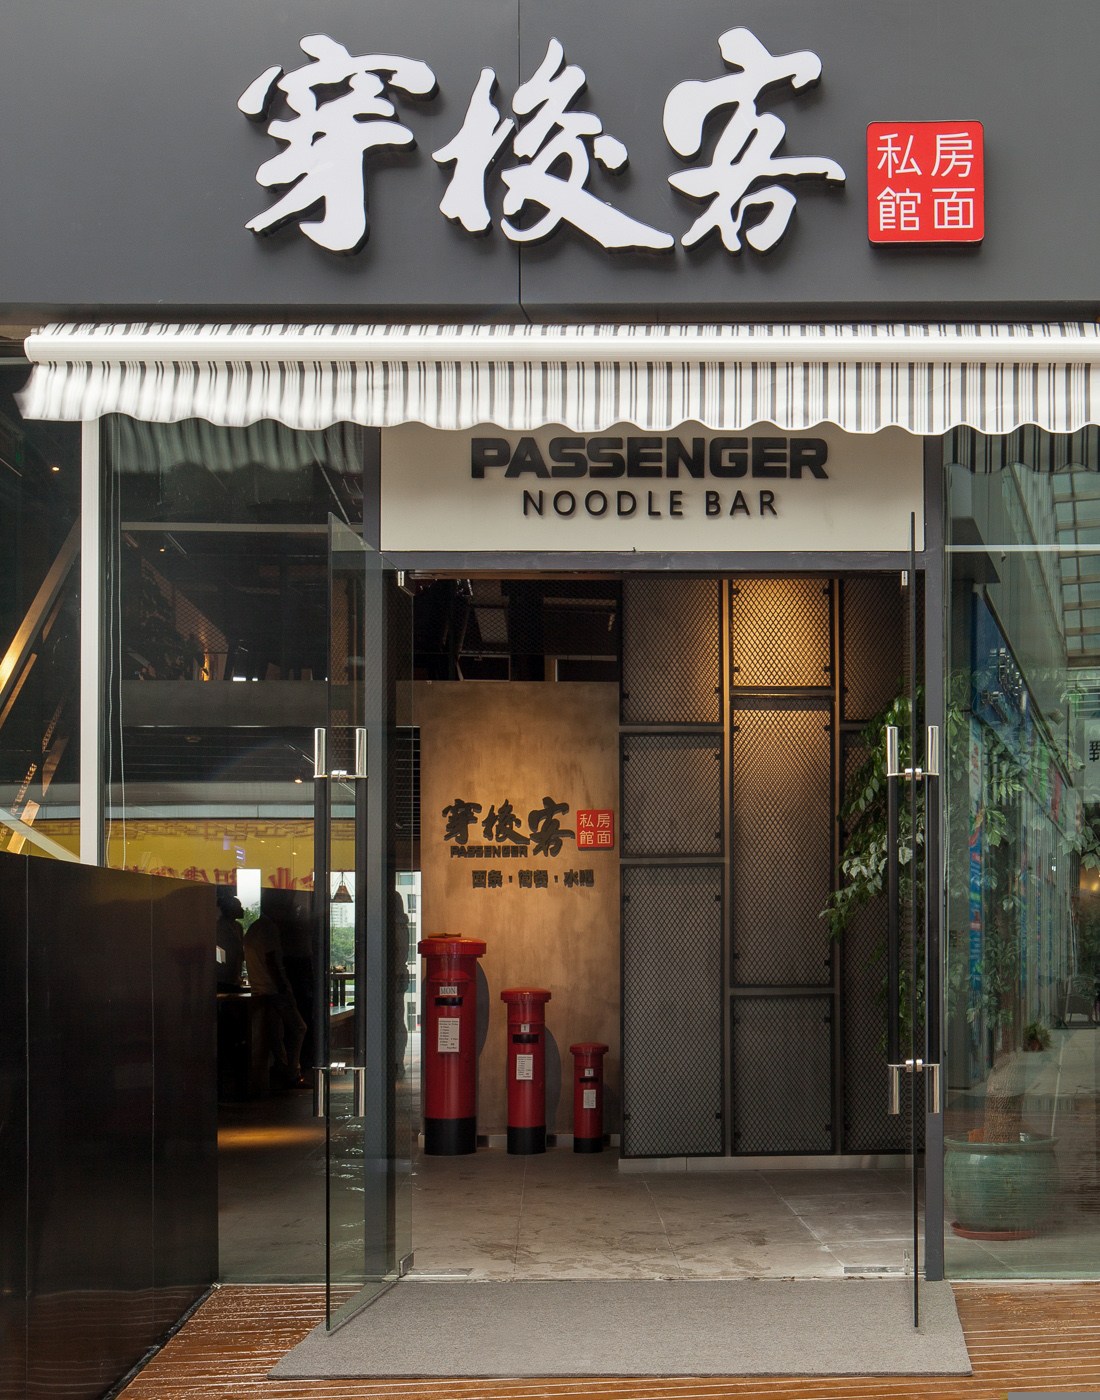 上海水泥与做旧铁艺构成的餐饮空间